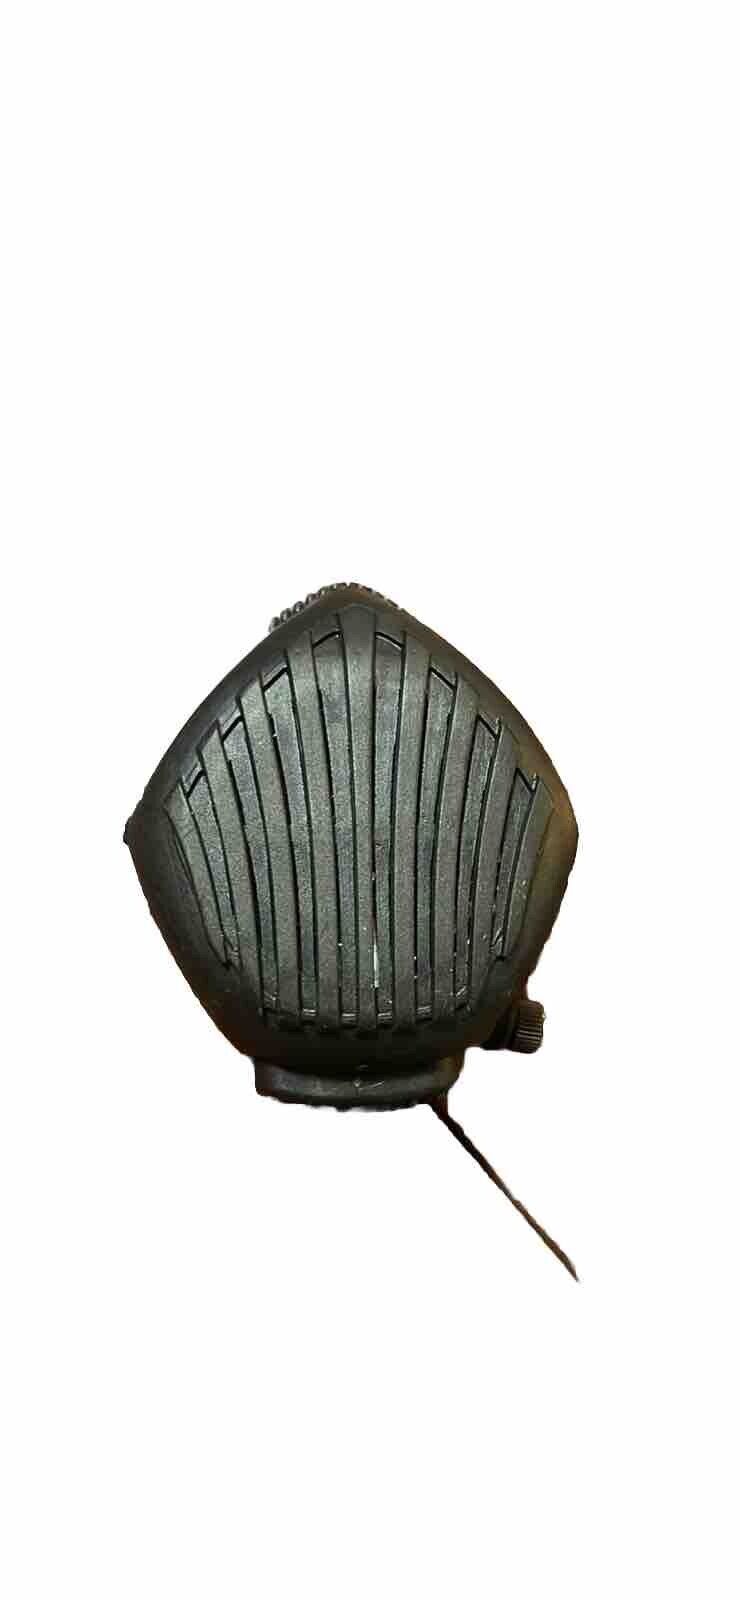 Avon M50 Gas Mask Audio Voice Amplifier VPU Great Condition (cbrn4-OCT133)